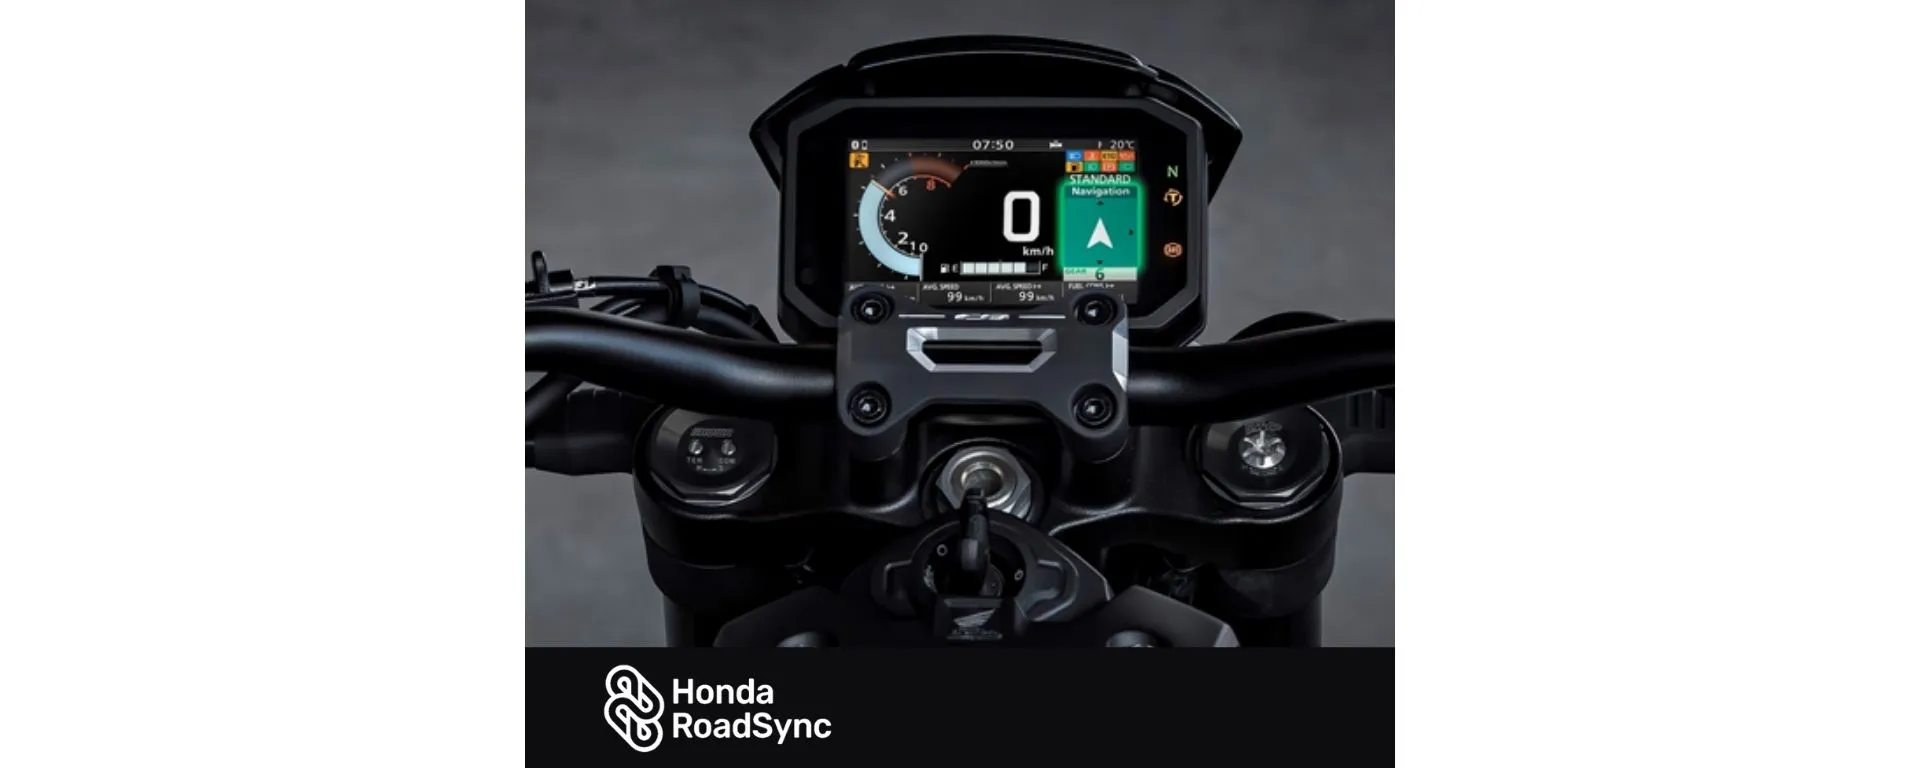 Detalhe do Painel da Moto Honda CB 1000R